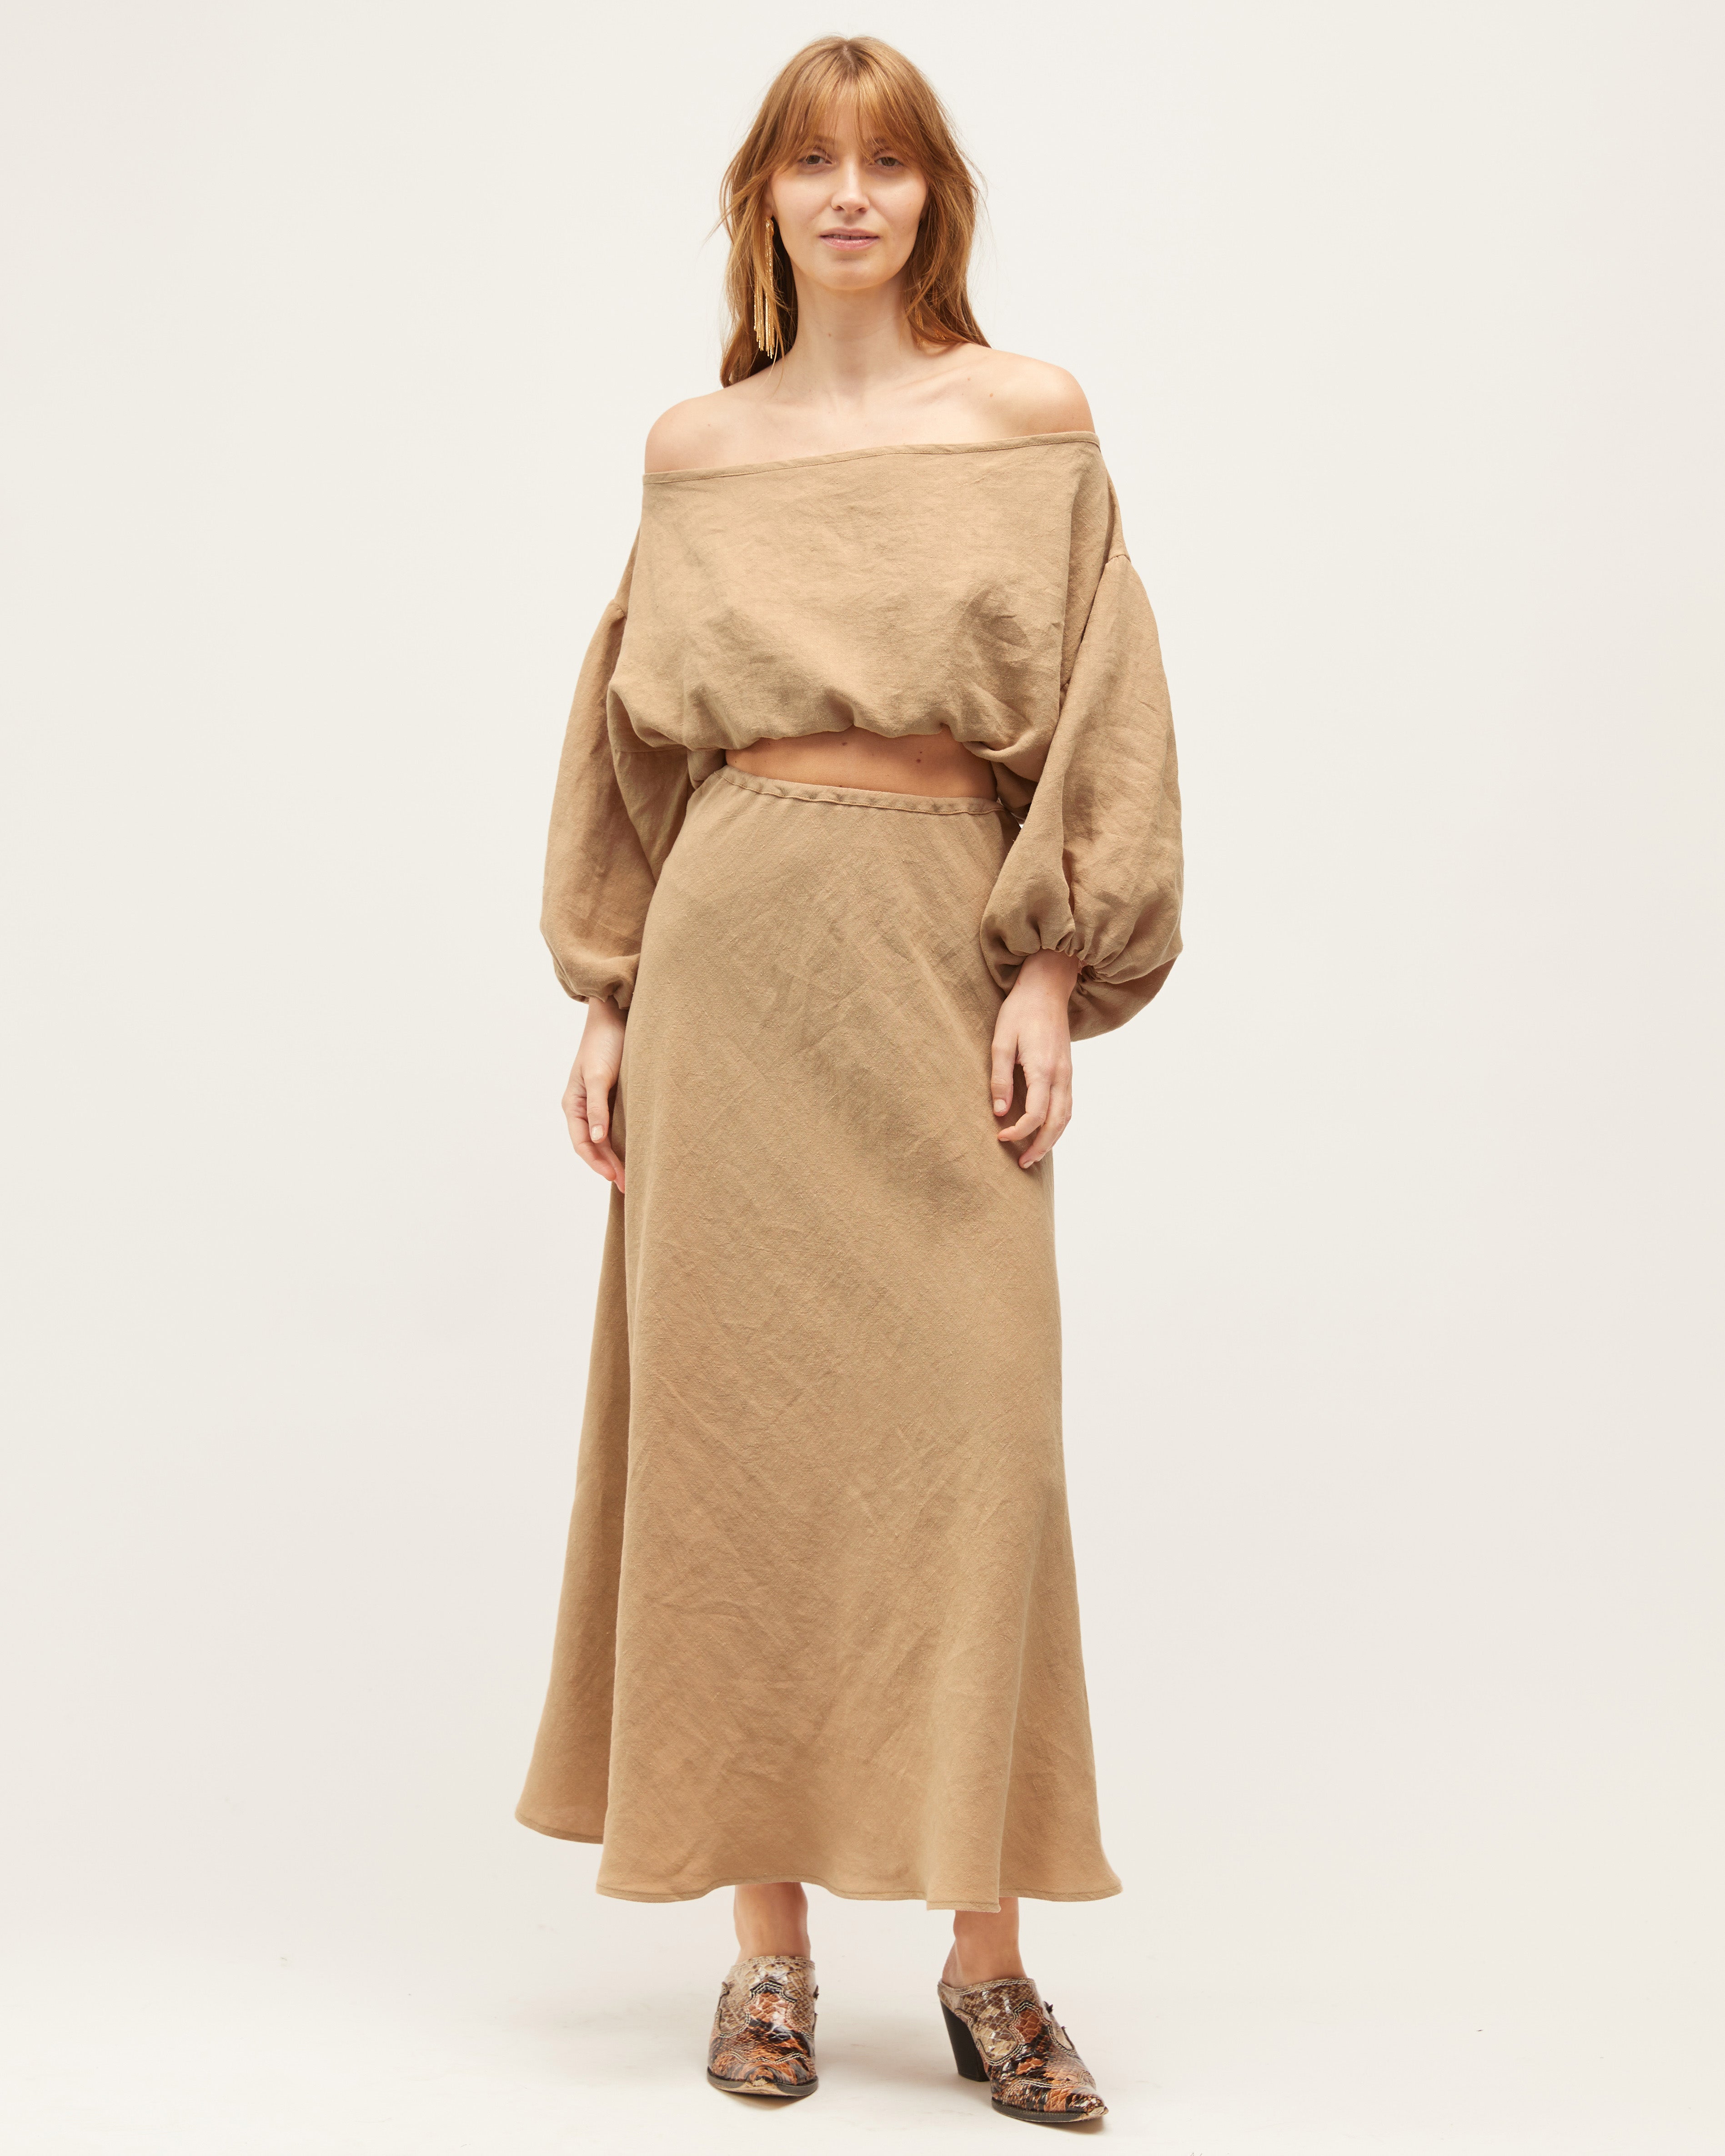 Wray Skirt | Camel $269